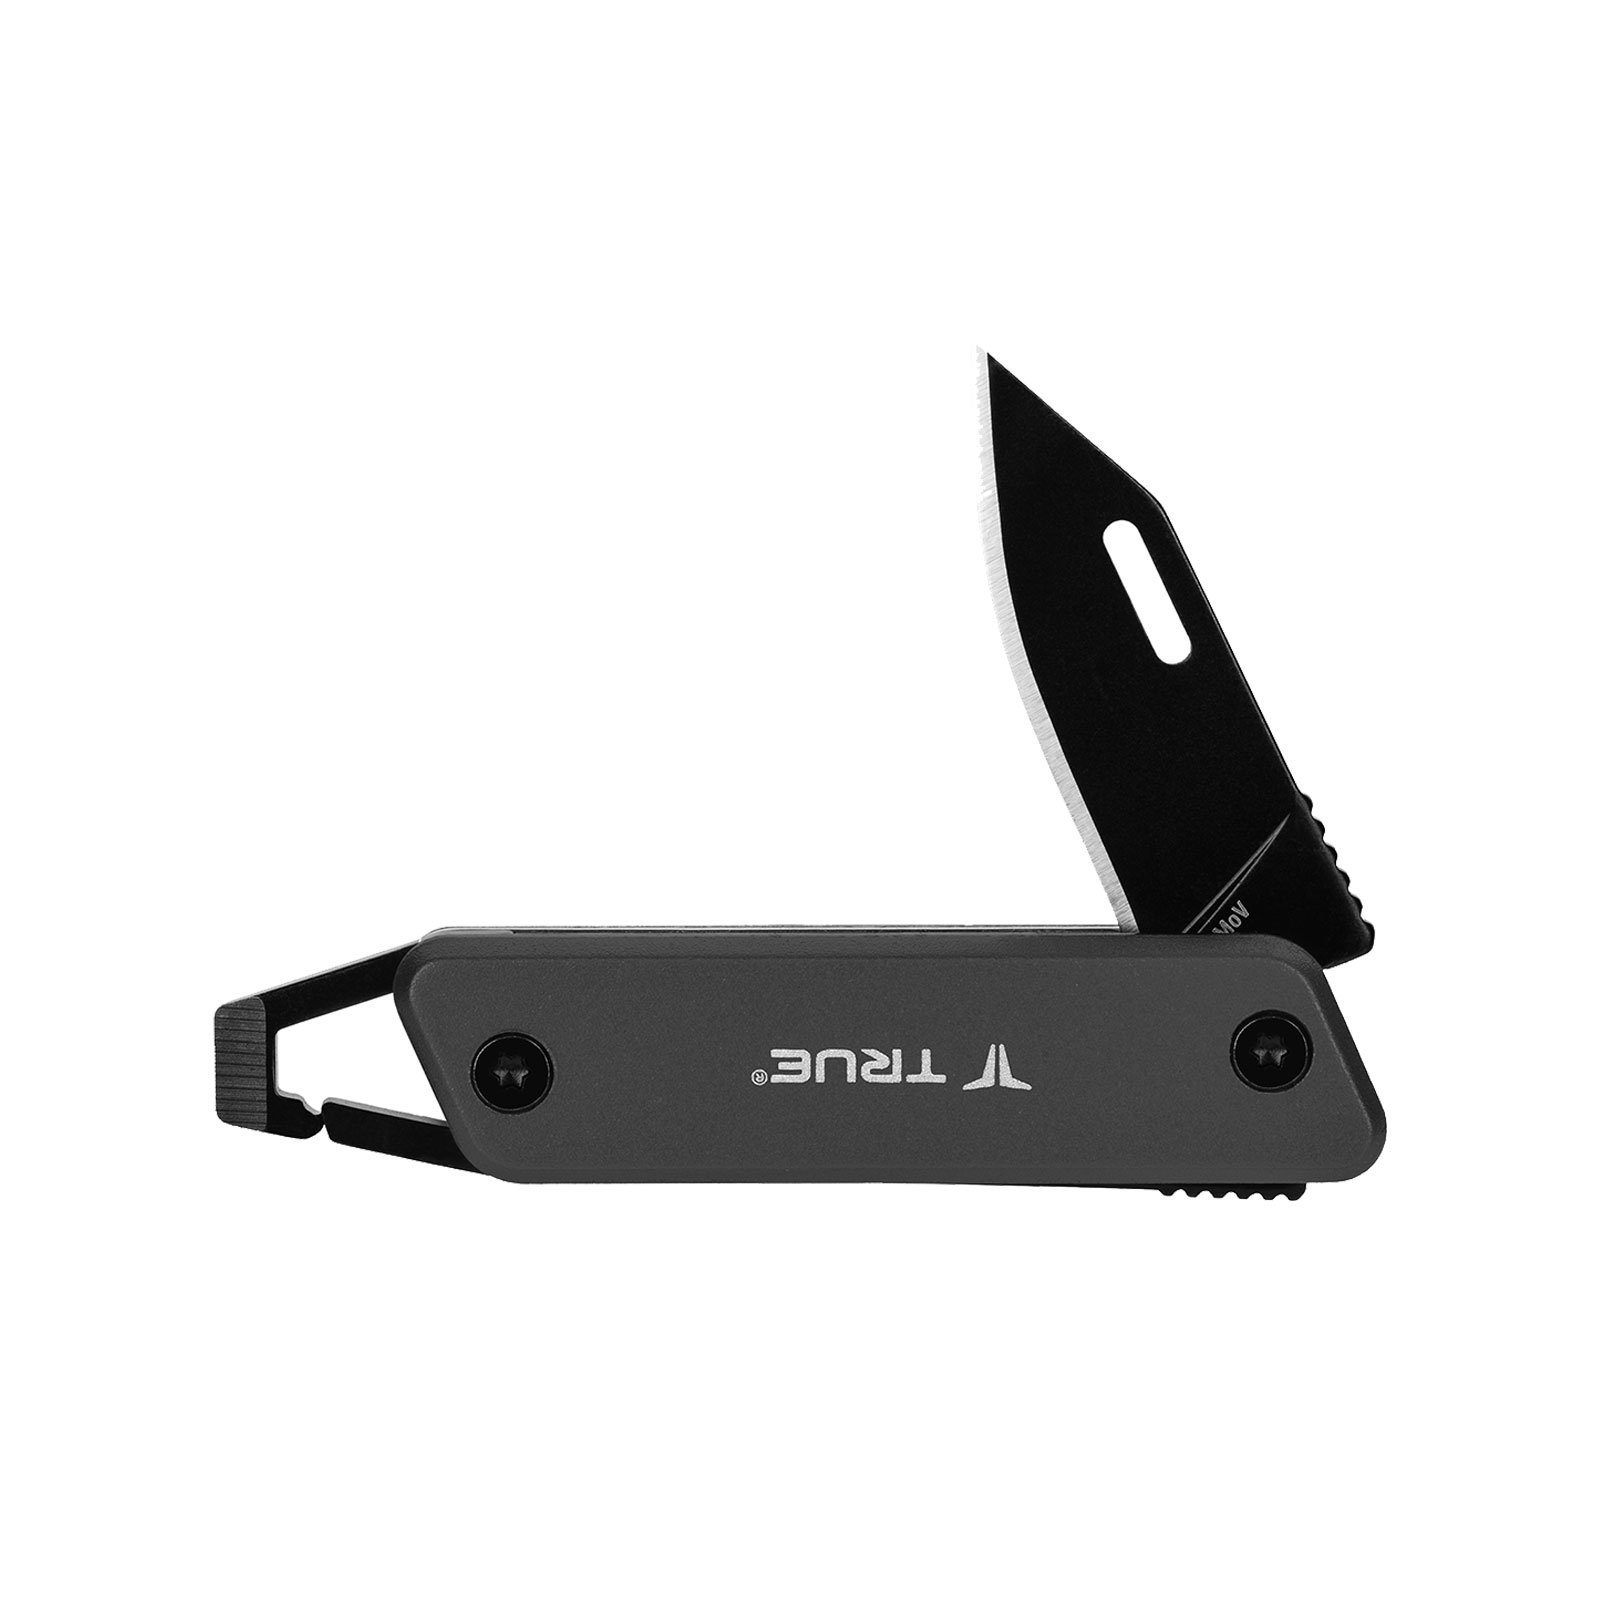 Key True Chain Grau Taschenmesser Knife, Messer Mini Taschenmesser Utility Schlüsselanhänger Tool